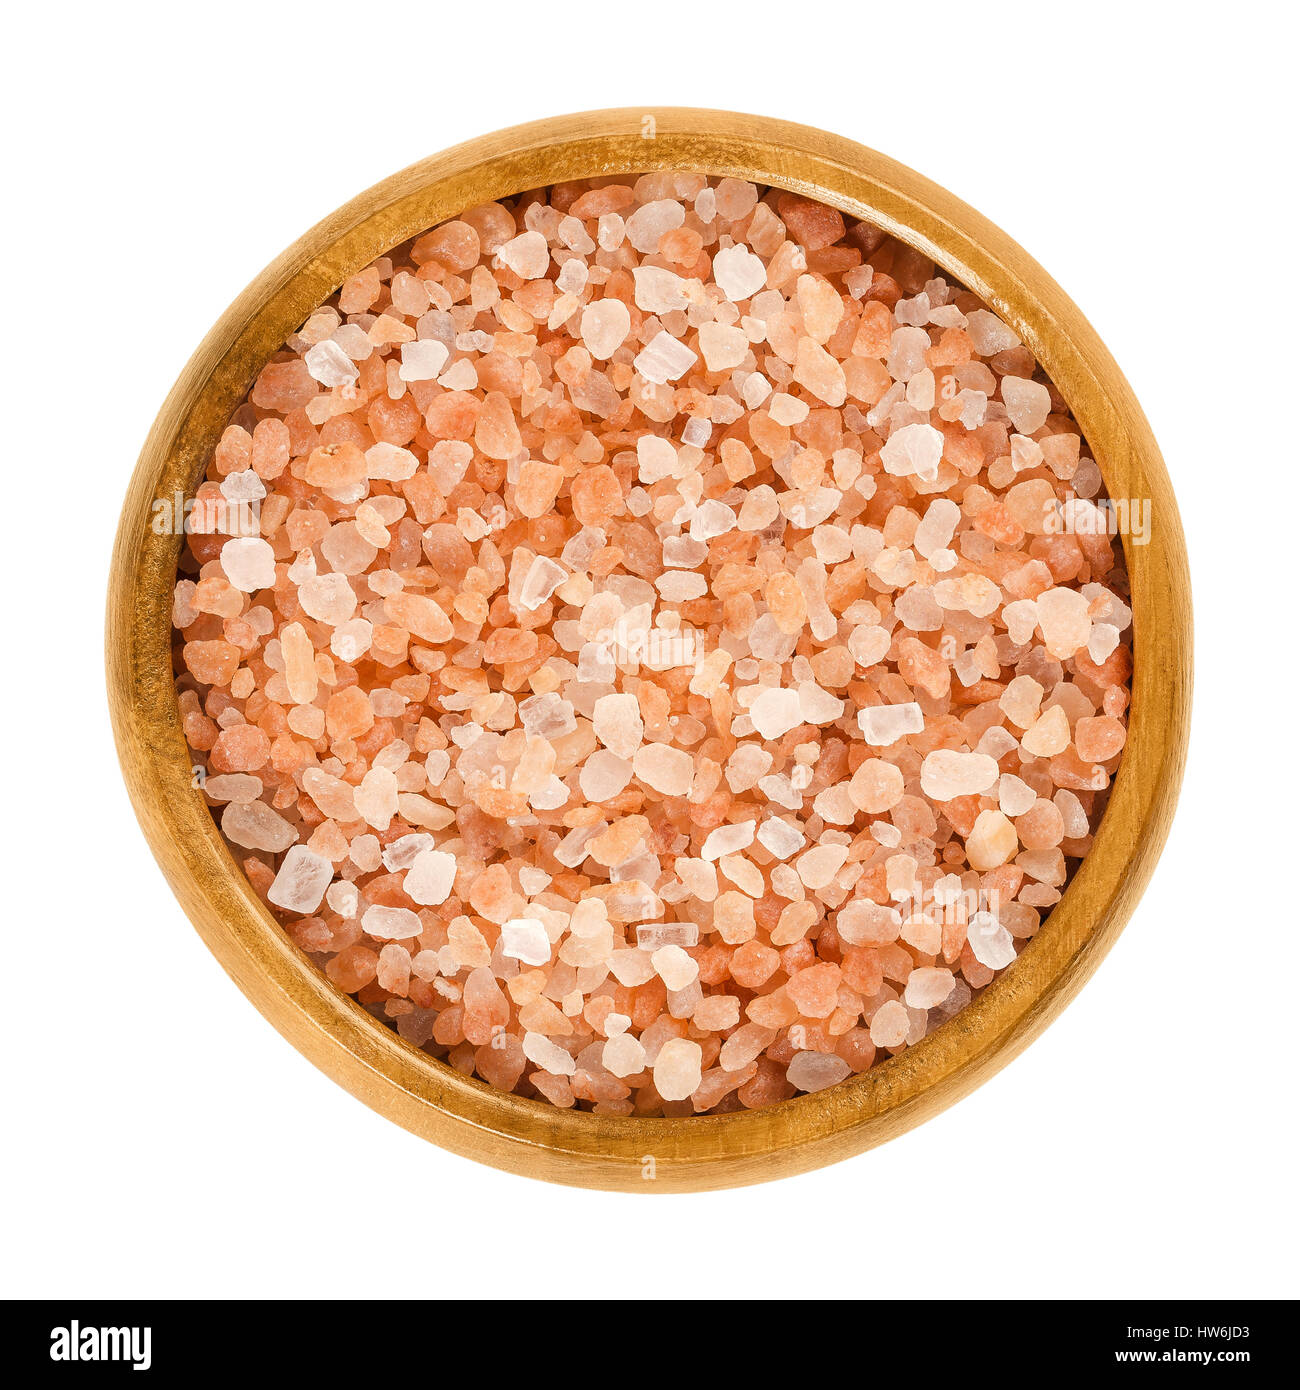 Himalaya-Salz in Holzschale. Steinsalz. Halit aus Region Punjab, Pakistan. Ähnlich wie Kochsalz plus rosa farbigen mineralischen Verunreinigungen. Stockfoto